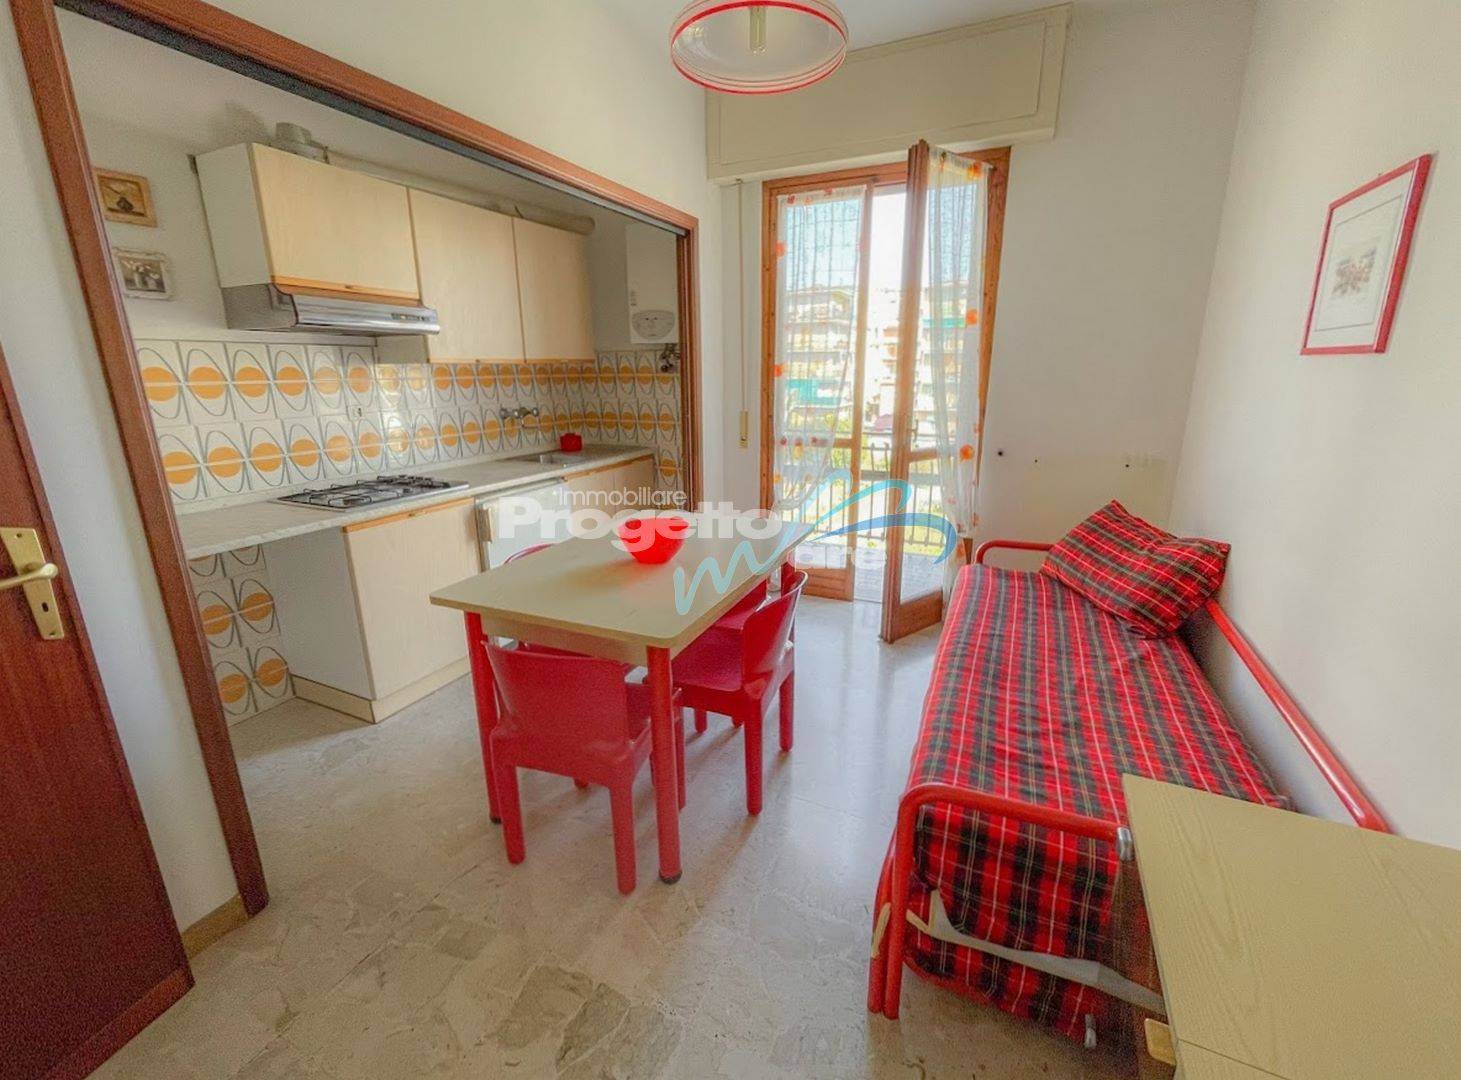 Appartamento in vendita a Pietra Ligure, 2 locali, zona Località: S.aCorona, prezzo € 160.000 | PortaleAgenzieImmobiliari.it